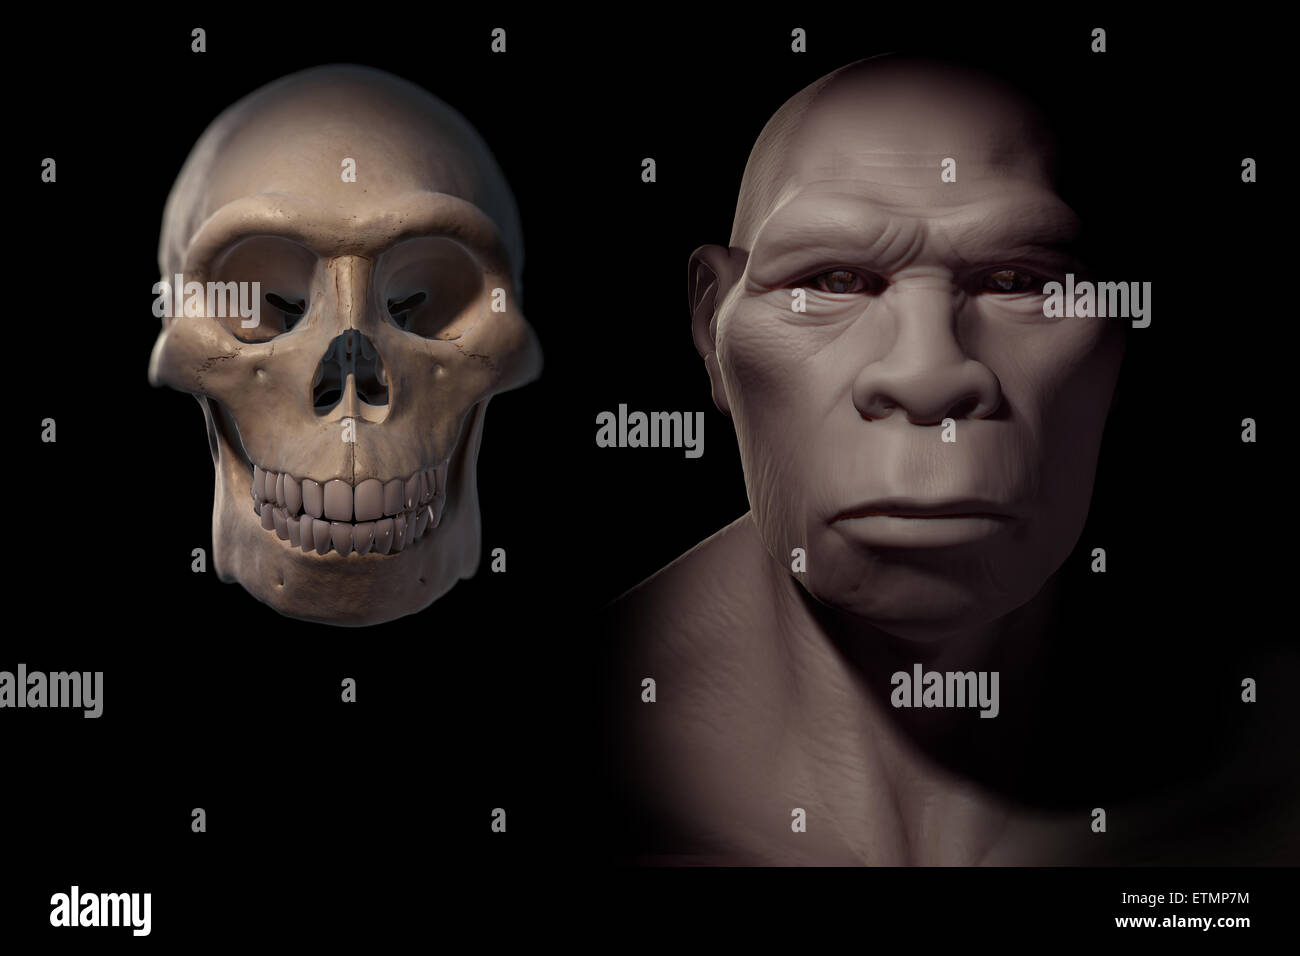 Rappresentazione di un Homo Erectus accanto a un Homo Erectus cranio per confronto. Homo erectus è un genere estinto di ominidi e predecessore di Homo Sapiens. Foto Stock